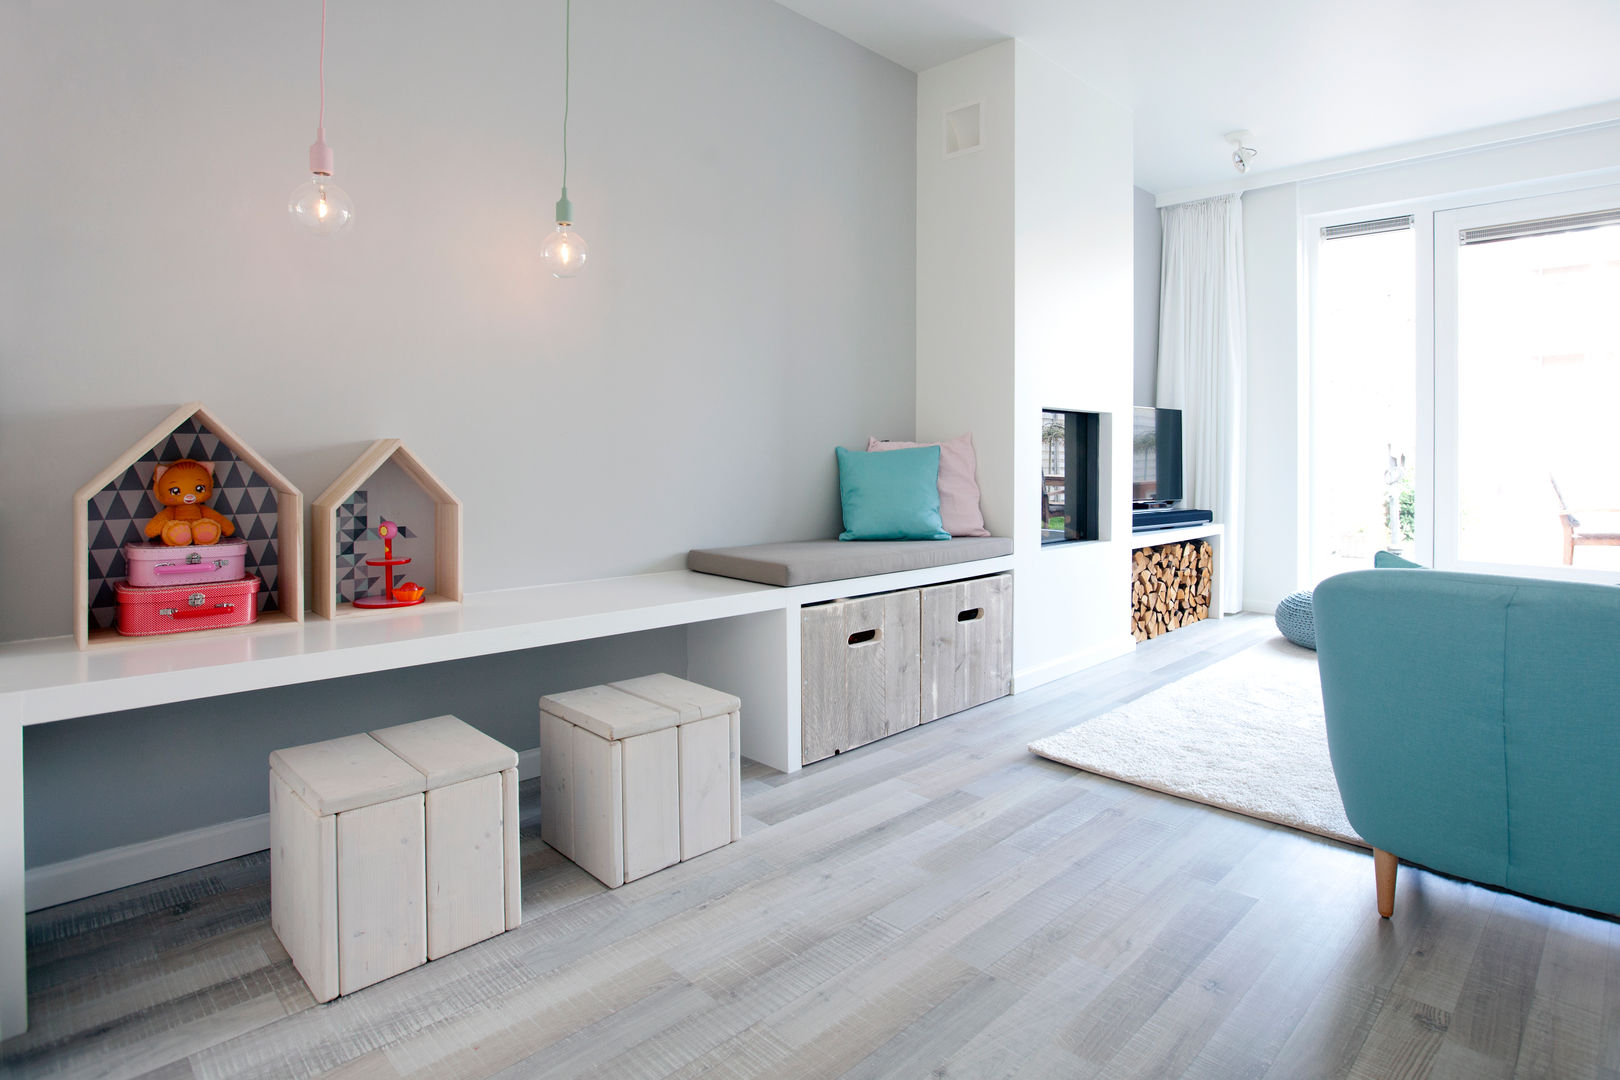 Een romantische woonkamer, Interieur Design by Nicole & Fleur Interieur Design by Nicole & Fleur Country style living room